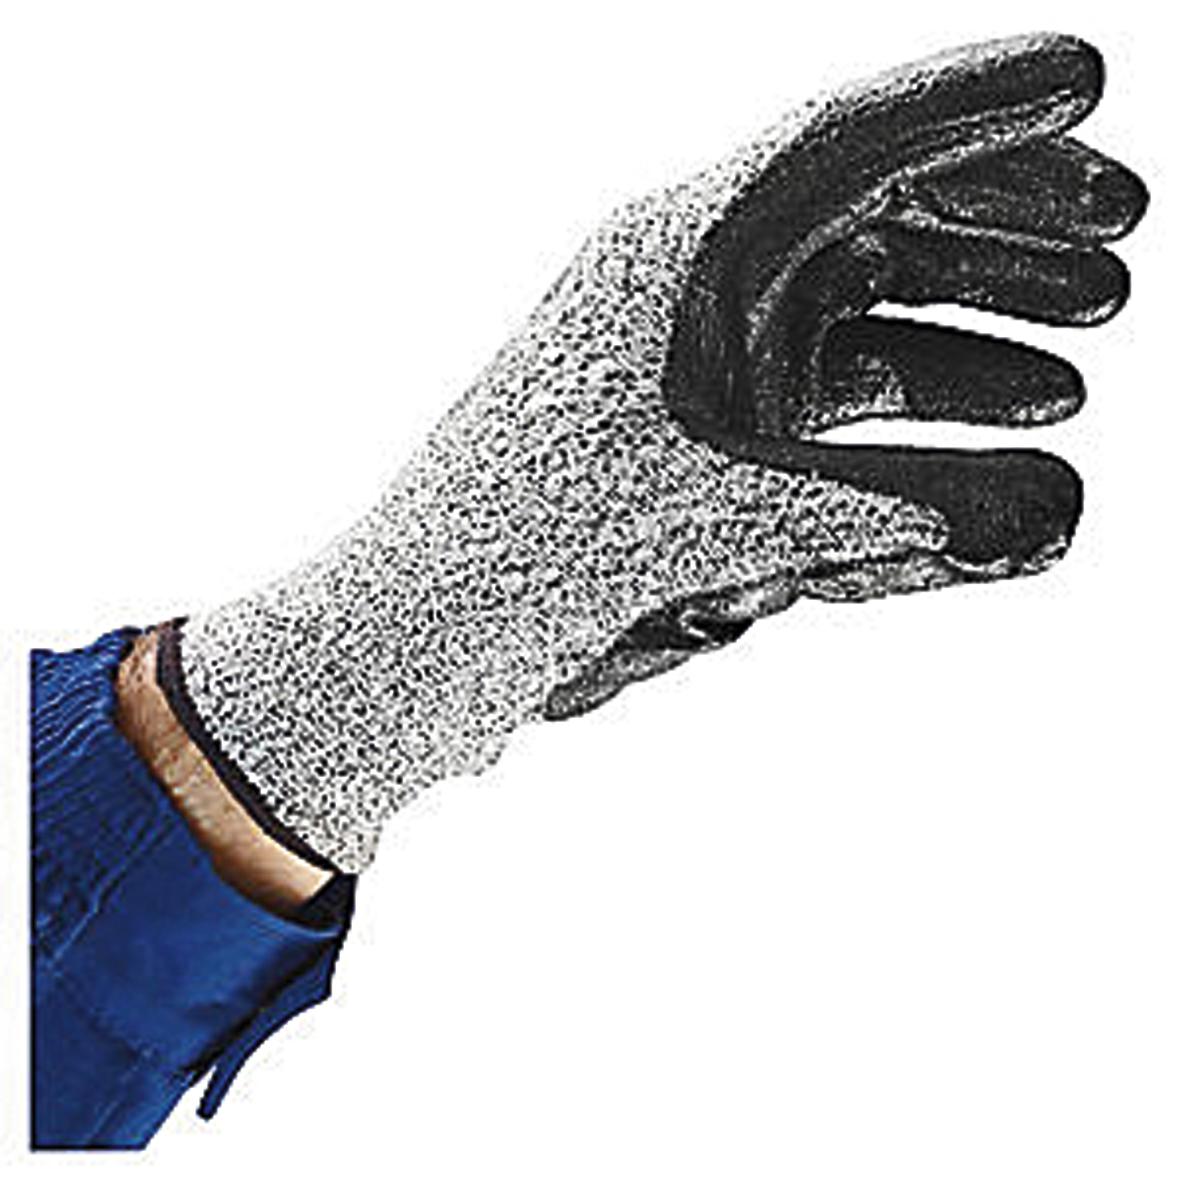 Snijbestendige handschoenen VECUT 41, polyethyleen, maat 7  ZOOM